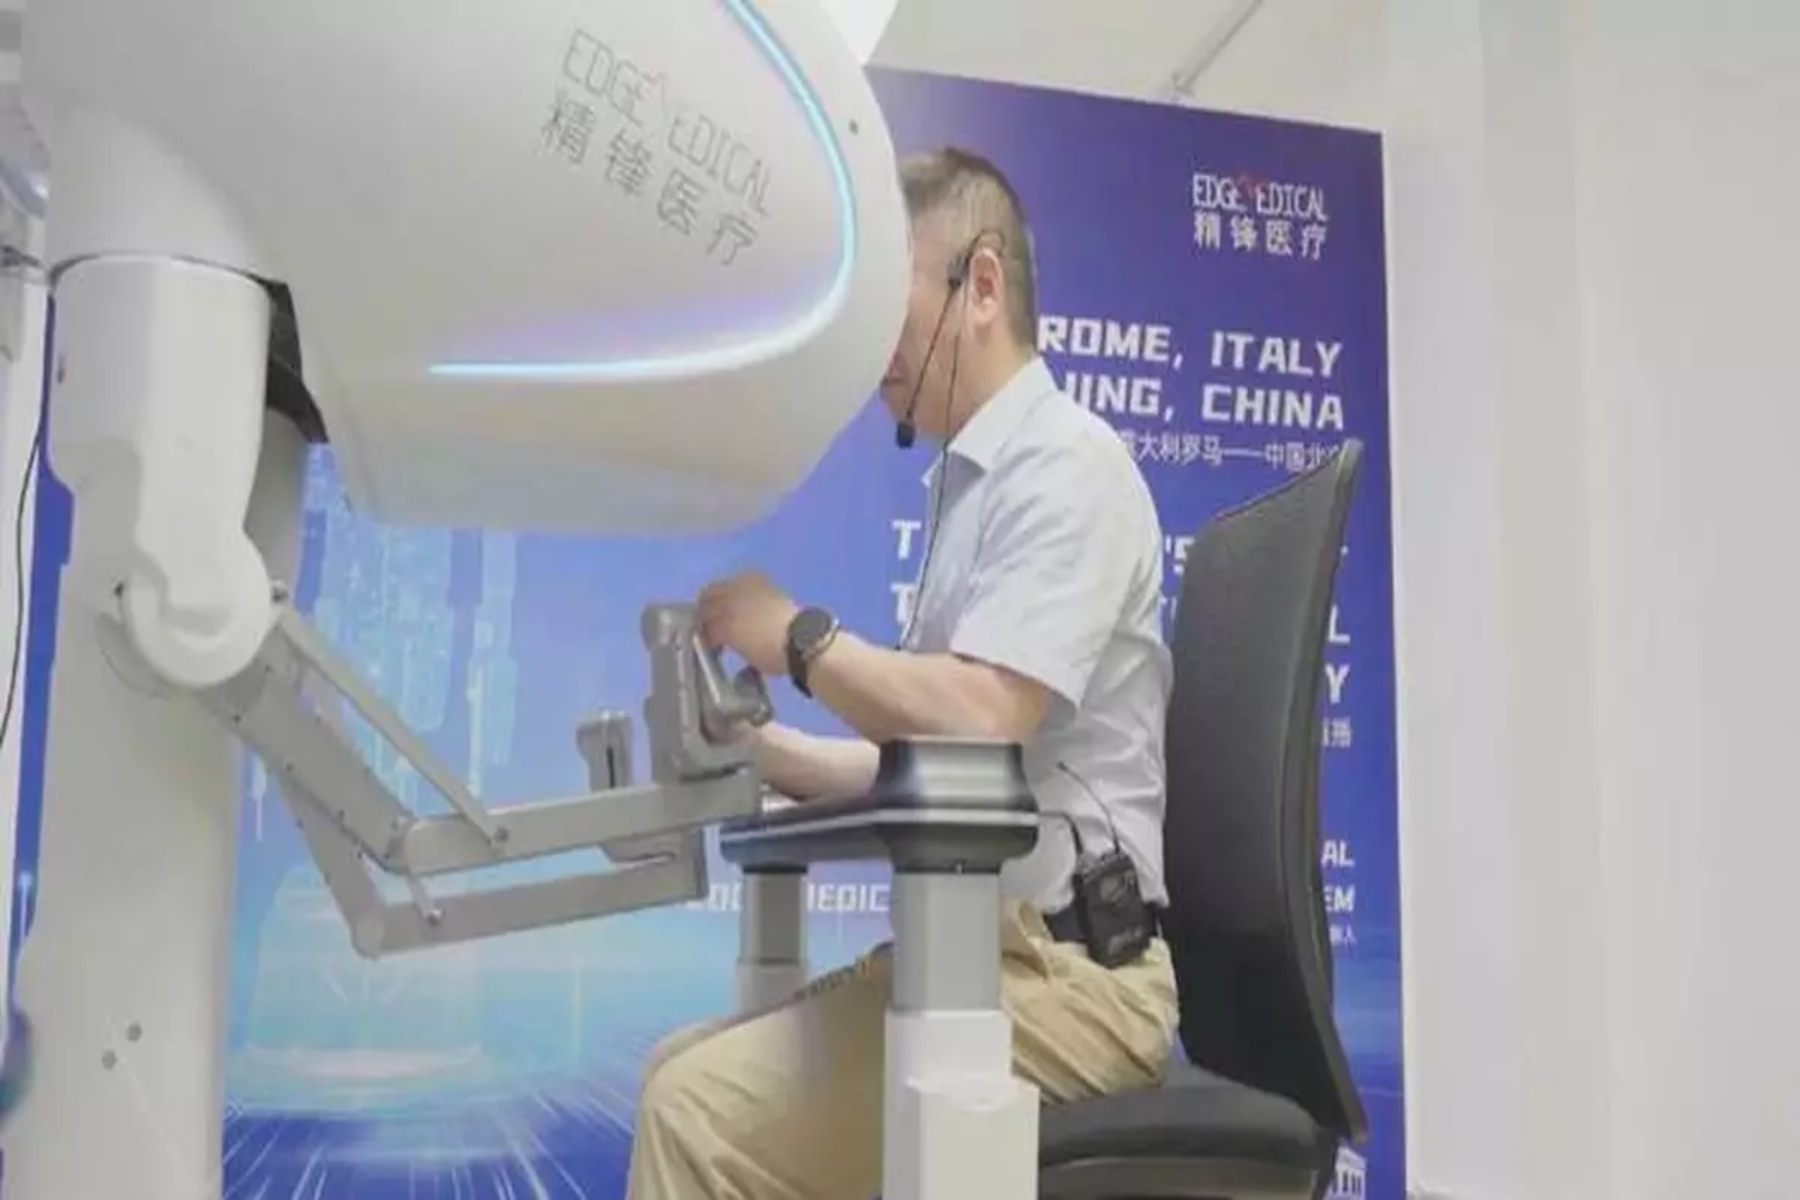 Xειρουργείο απόσταση: Kινεζική ιατρική ομάδα ολοκληρώνει την πρωτοποριακή ρομποτική χειρουργική εξ αποστάσεως